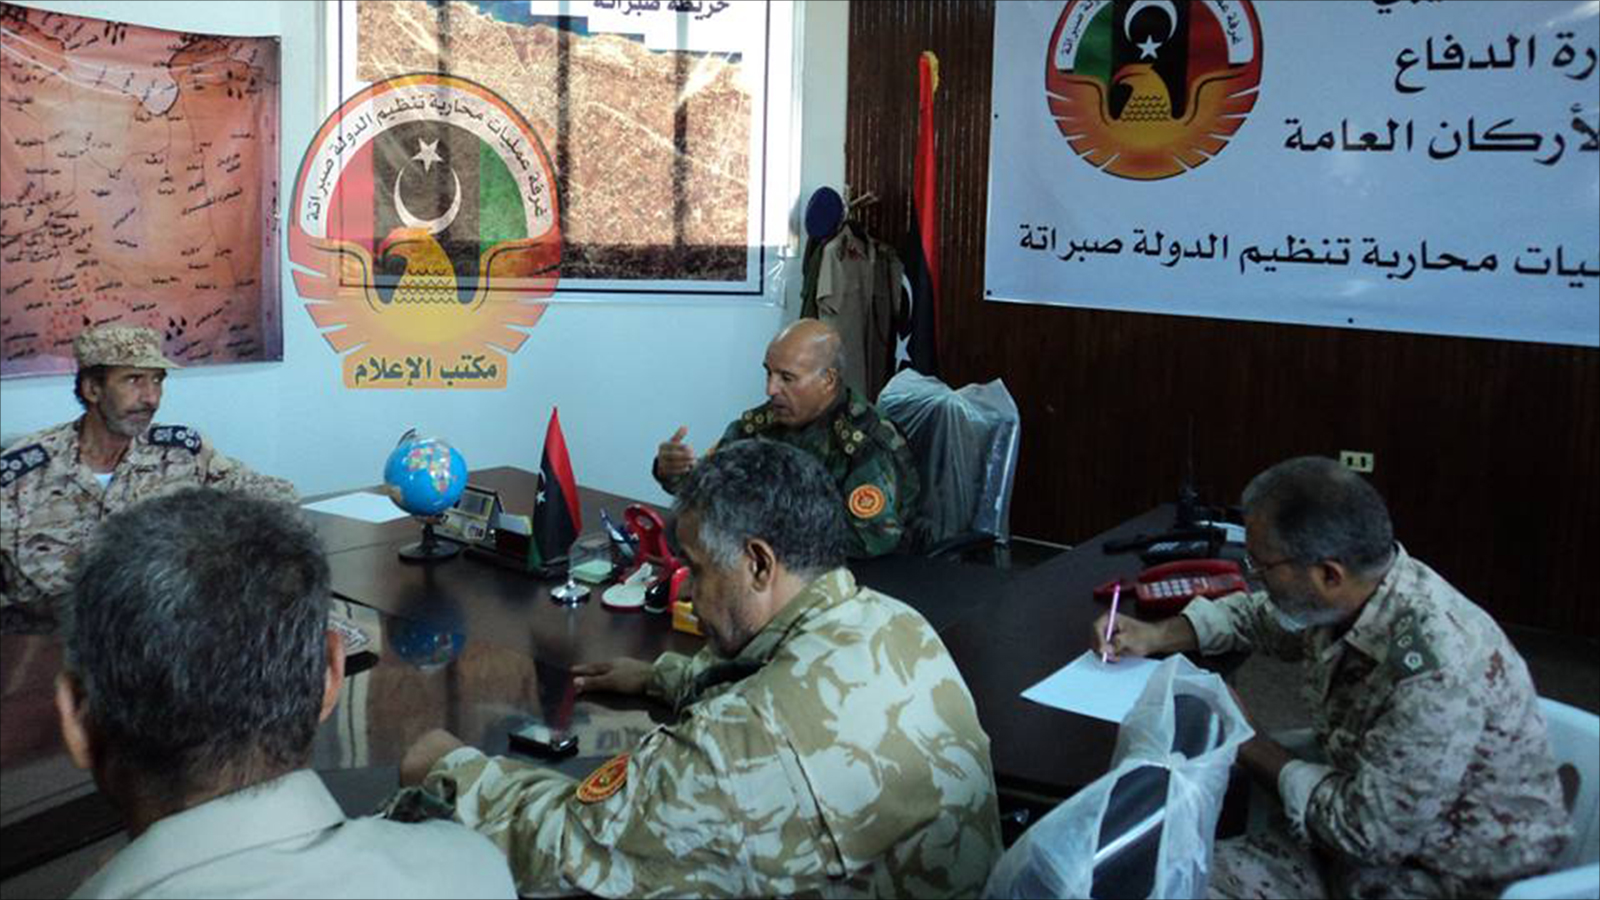 اجتماع لضباط غرفة محاربة التنظيم بصبراتة مع آمر الغرفة عمر عبد الجليل (وسائل التواصل)